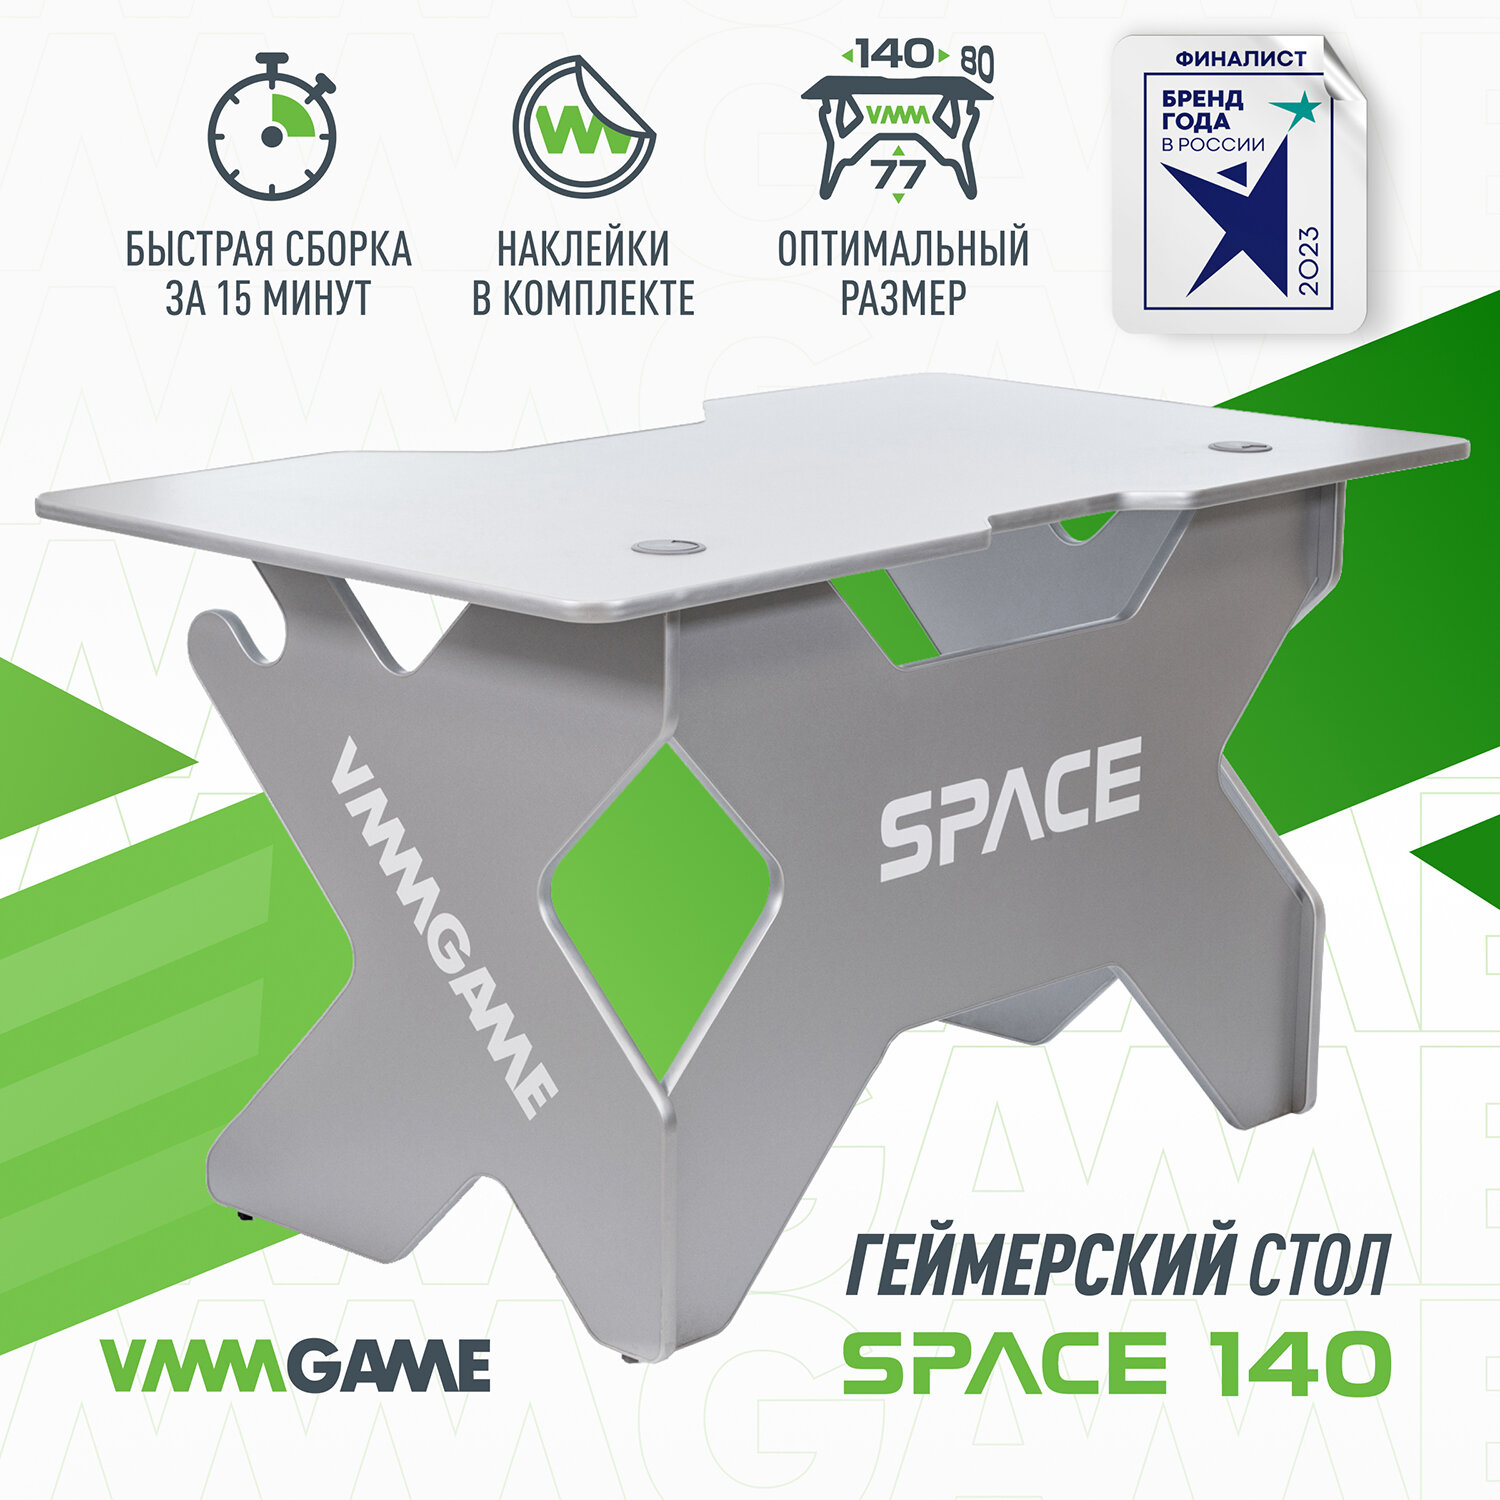 Игровой компьютерный стол VMMGAME SPACE LUNAR 140